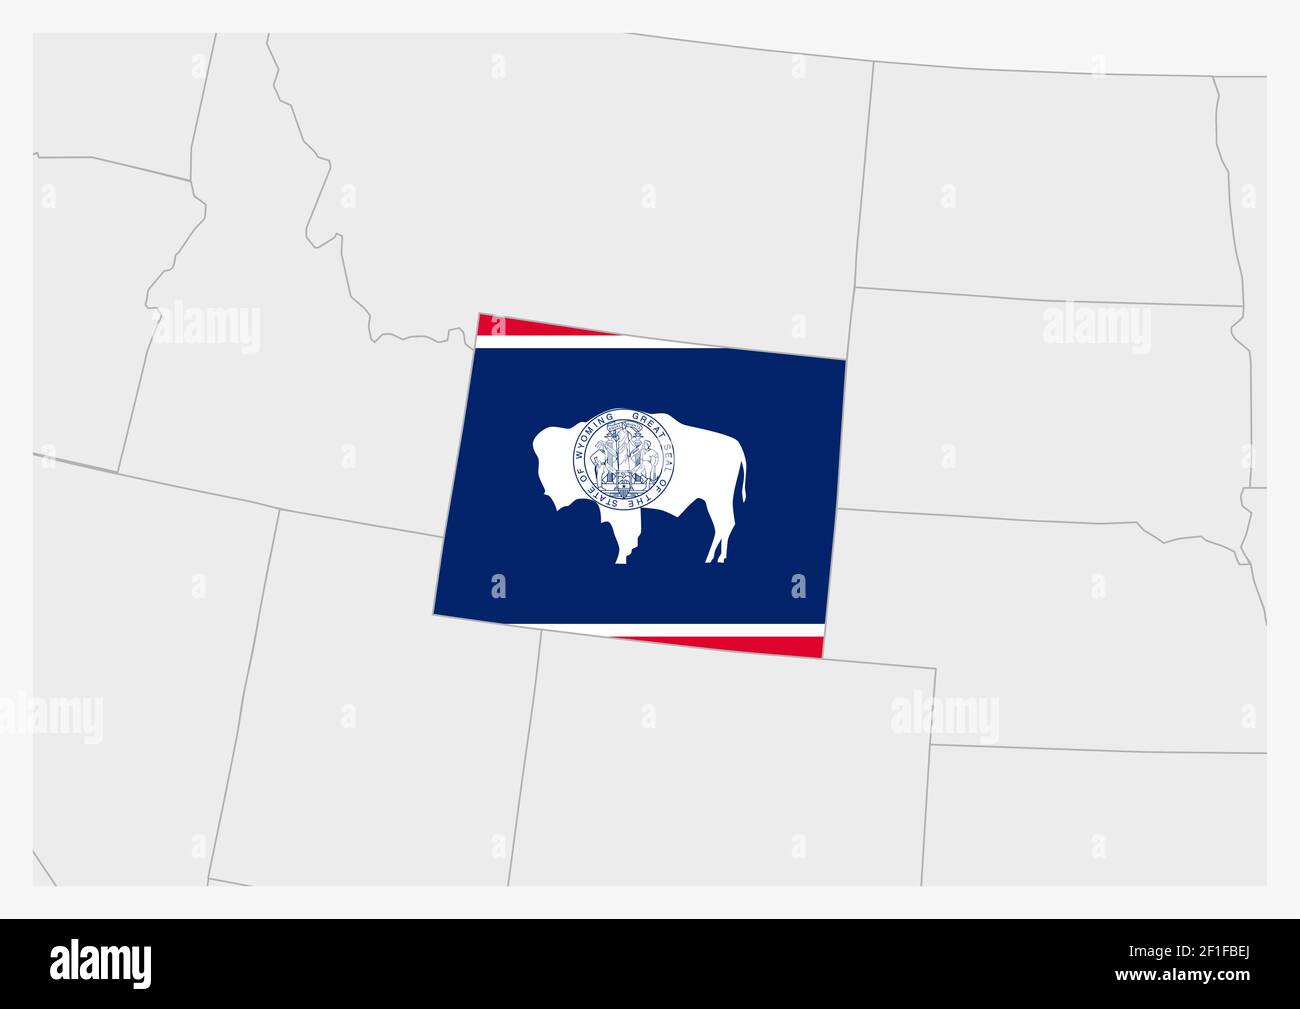 Carte DU Wyoming DE L'ÉTAT DES ÉTATS-UNIS mise en évidence dans les couleurs du drapeau du Wyoming, carte grise avec les États voisins des états-unis. Illustration de Vecteur